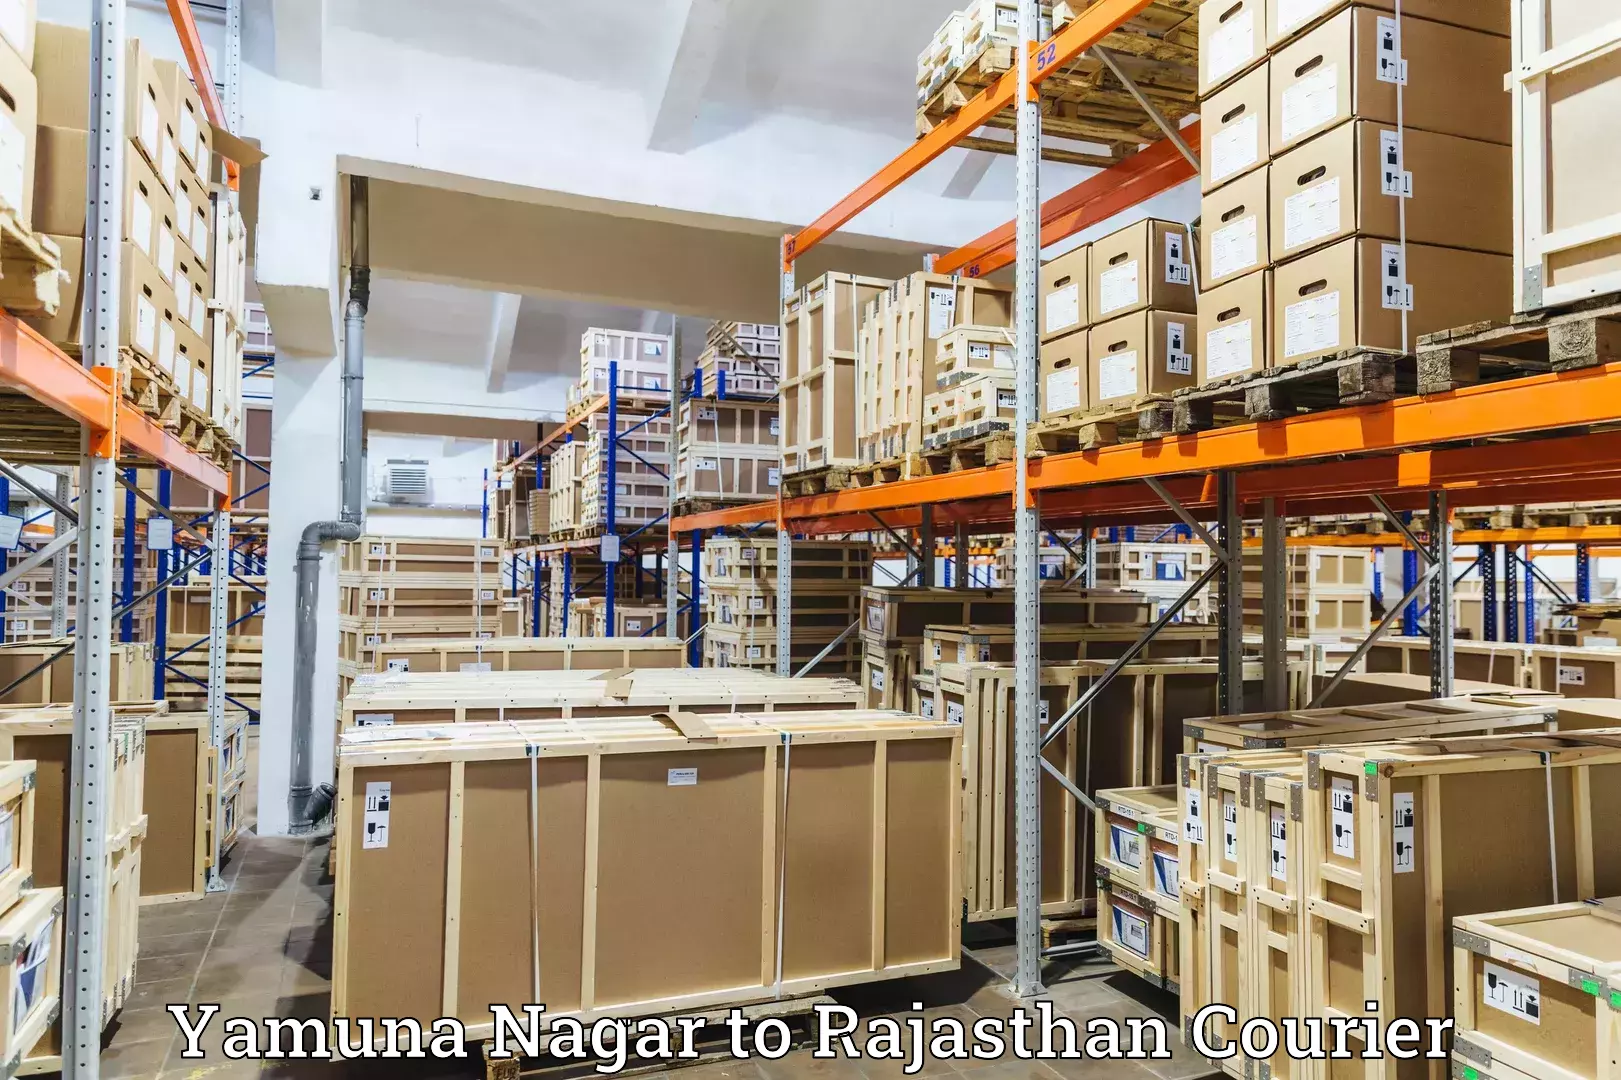 Courier service booking Yamuna Nagar to Pratapgarh Rajasthan